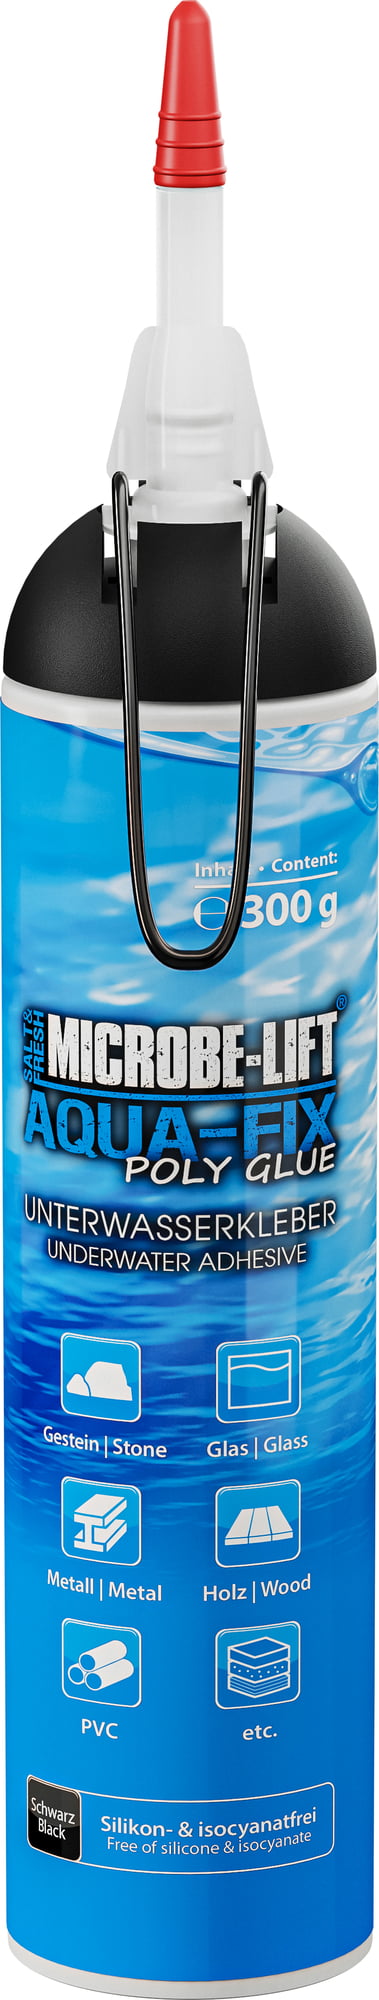 Microbe-Lift Aqua-Fix Poly Glue - Polymer-Unterwasserkleber 300 g Kartusche